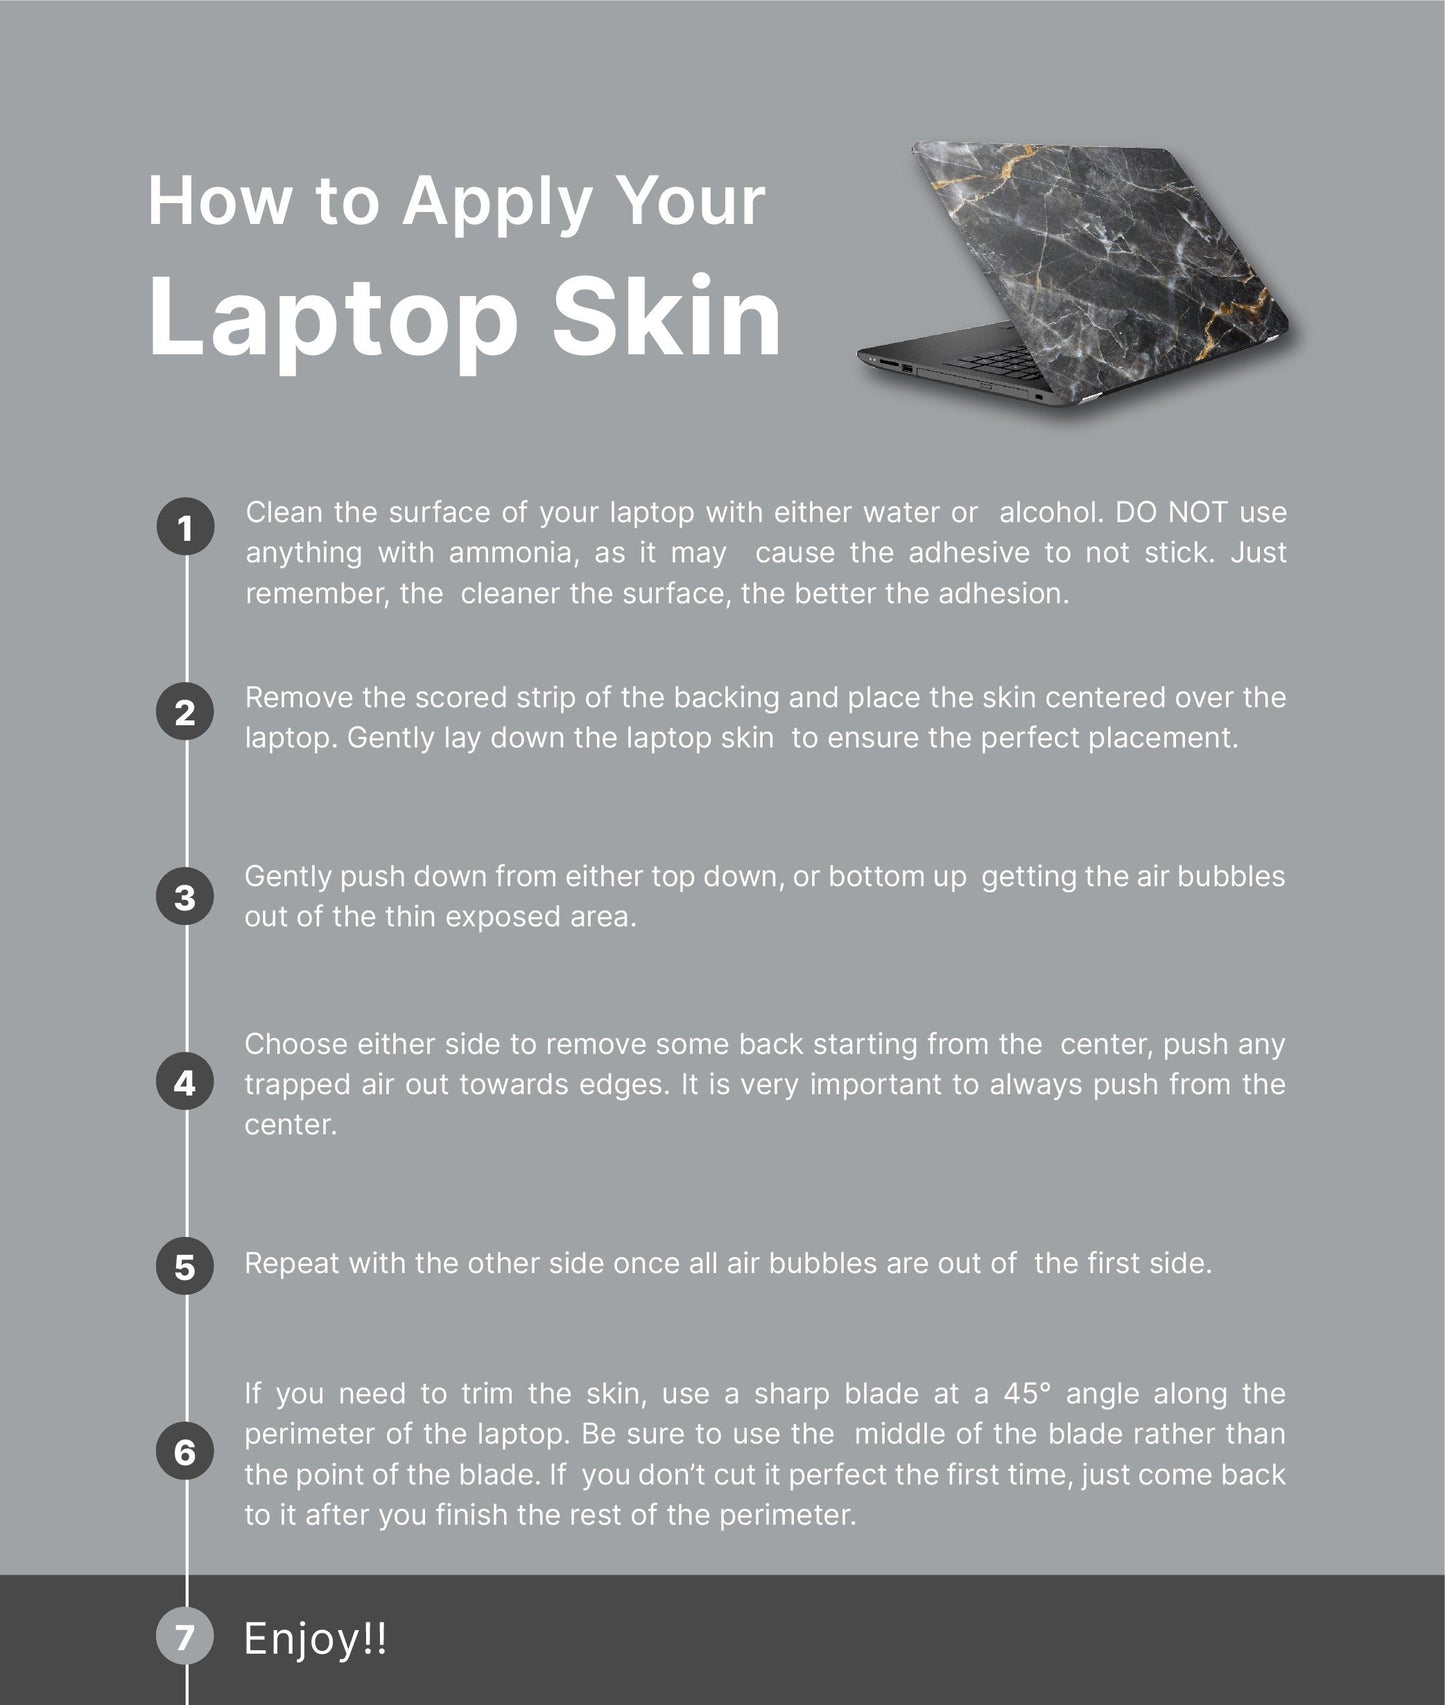 Bird Florals Laptop Skin, Laptop Cover, Laptop Skins, Removable Laptop Skins, Laptop Decal, Customized Laptop Skin, Laptop Stickers 266